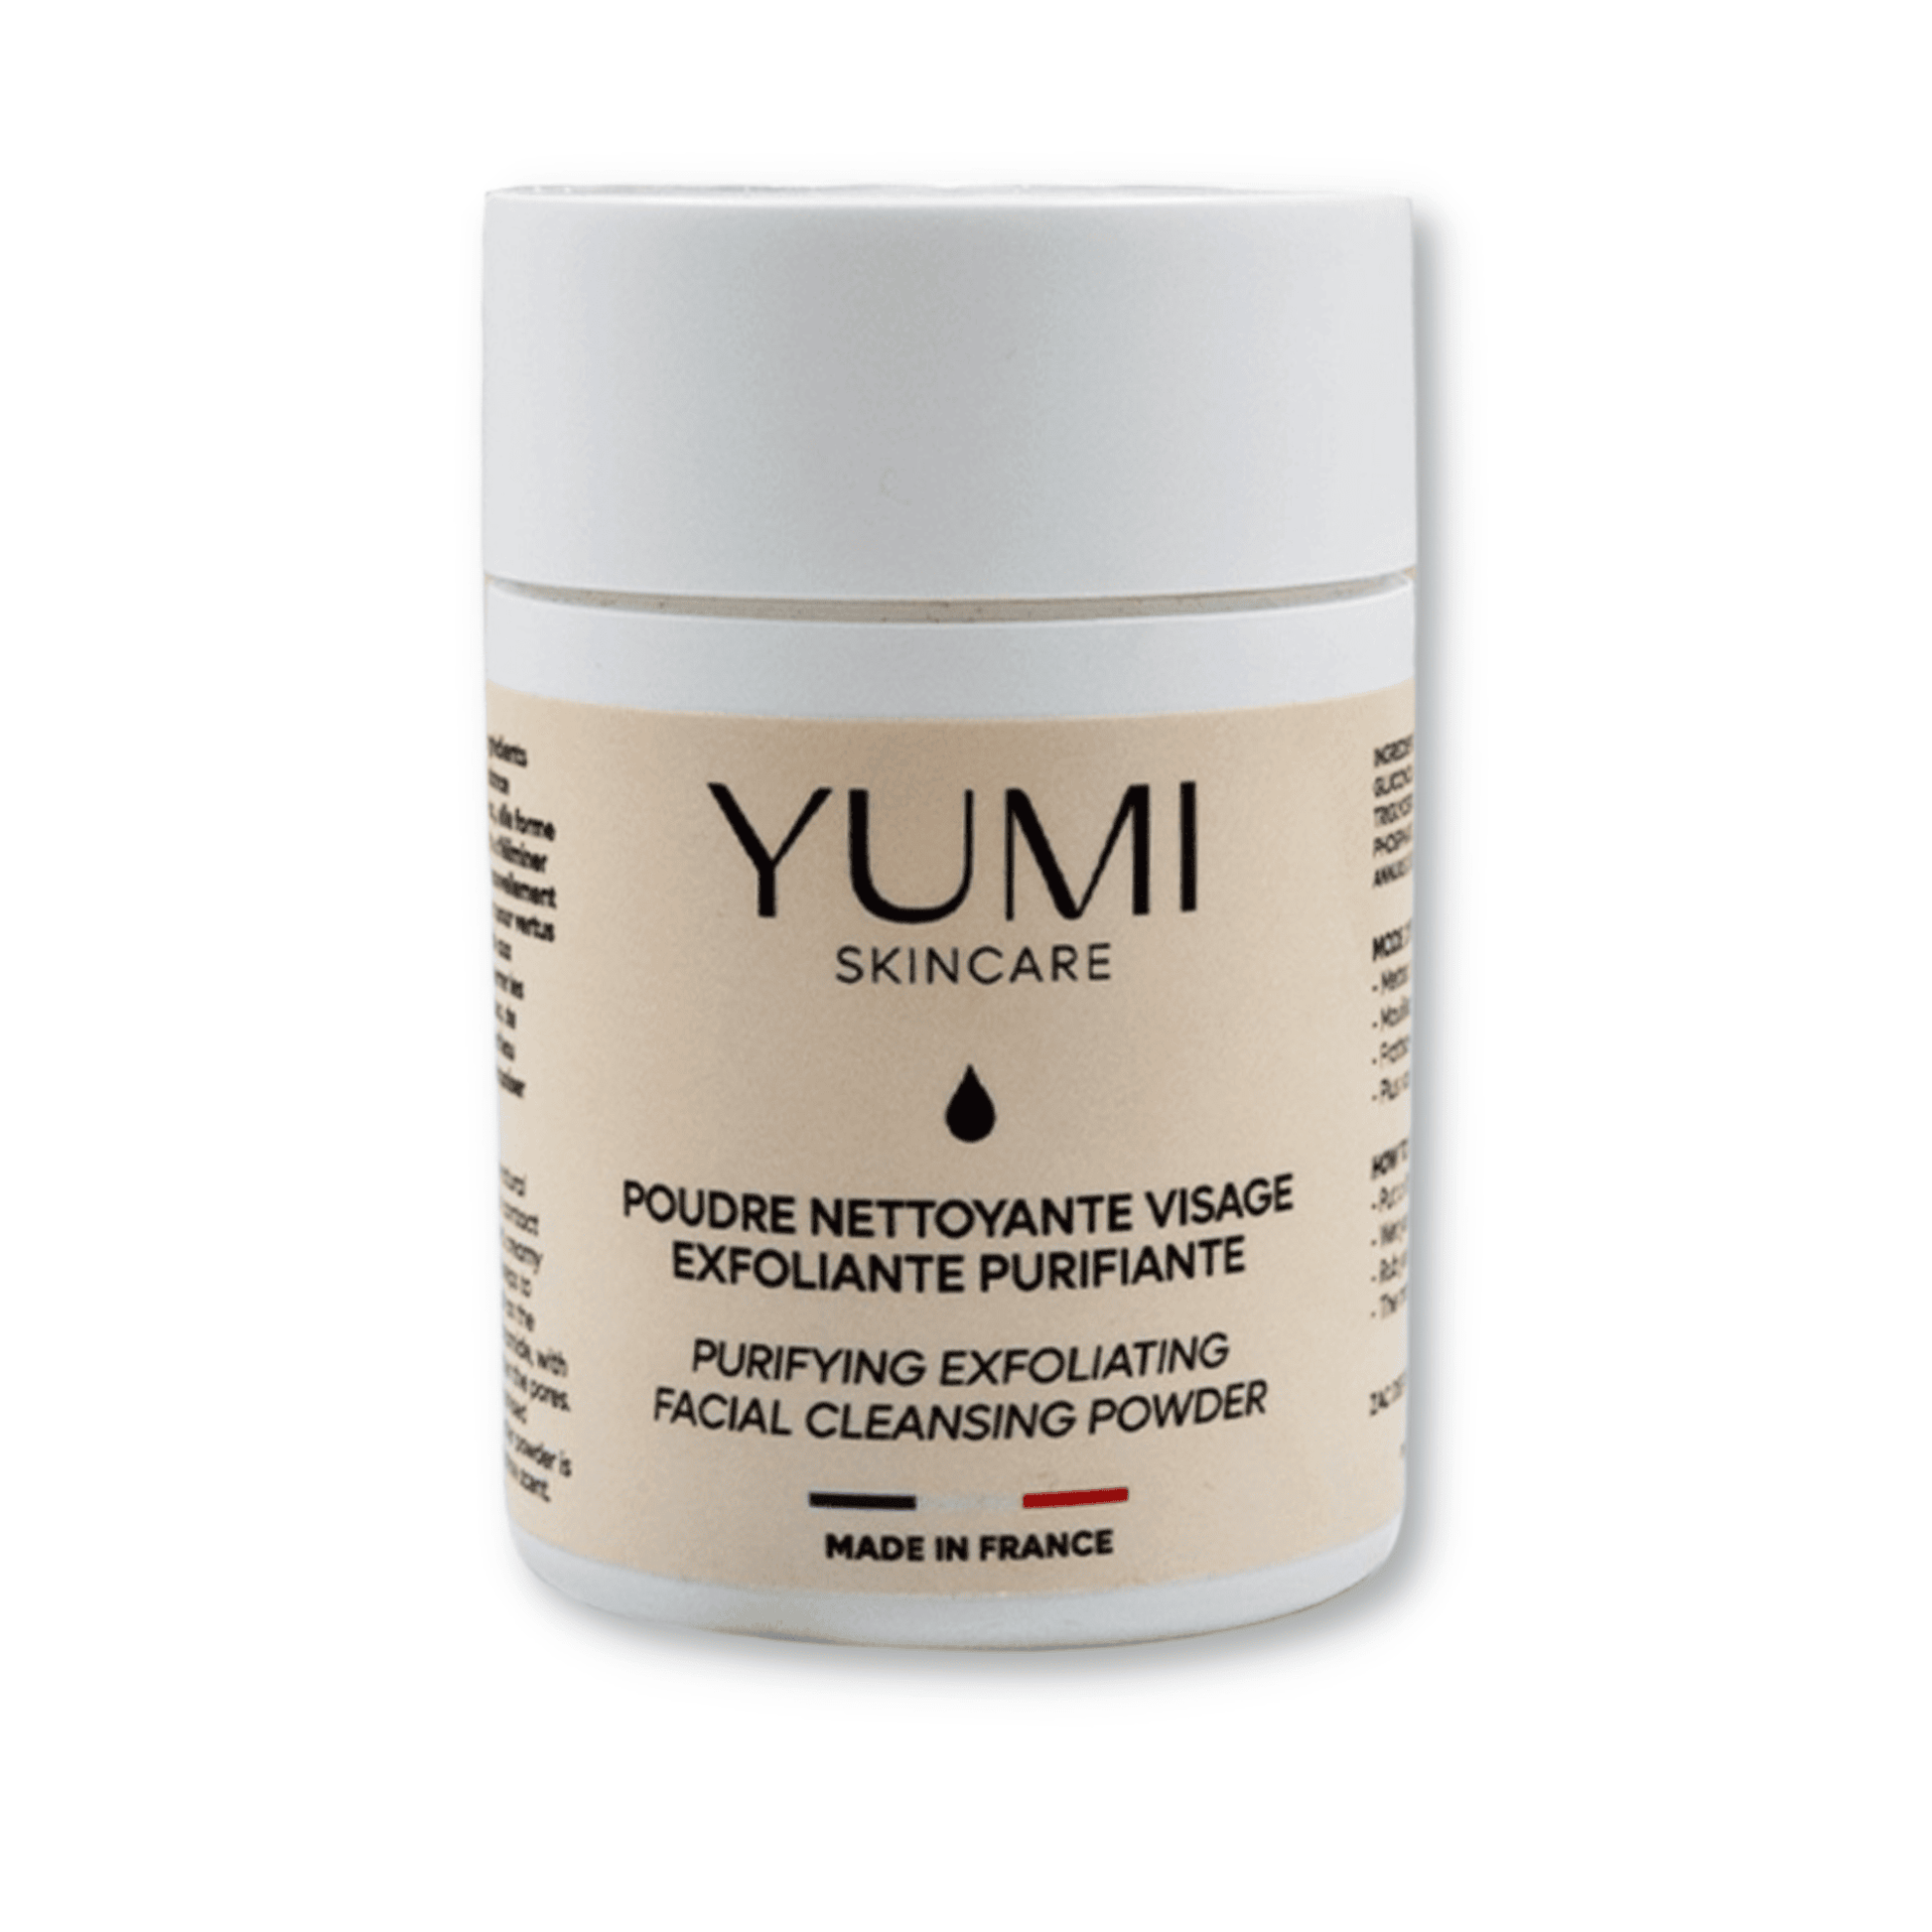 Yumi Skincare Puriyfing Exfoliating Facial Cleansing Powder